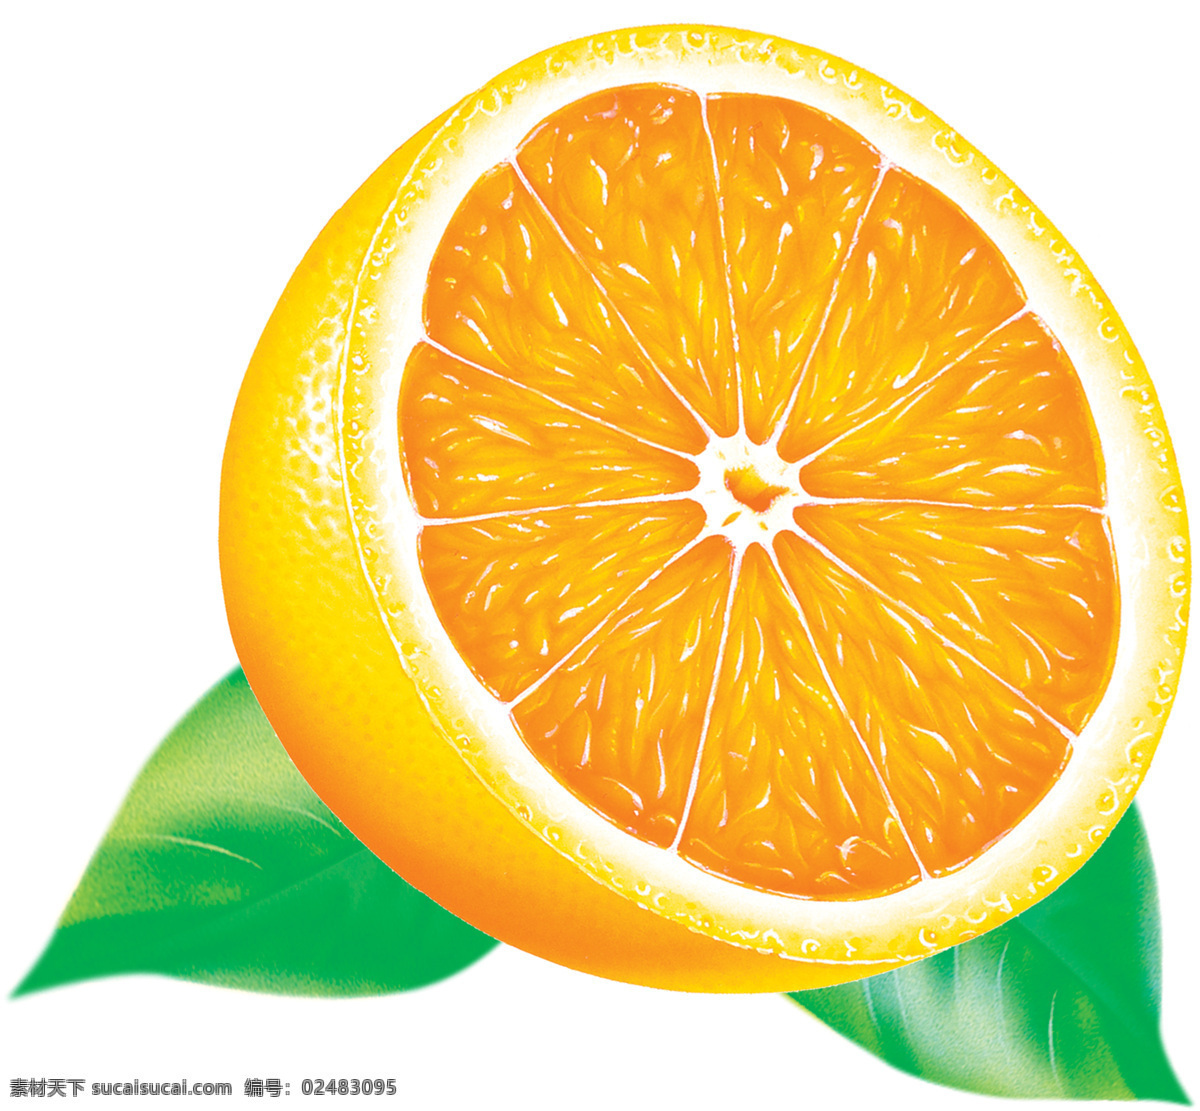 半个橙子 切开的橙 水果 橙子 橙叶 白色